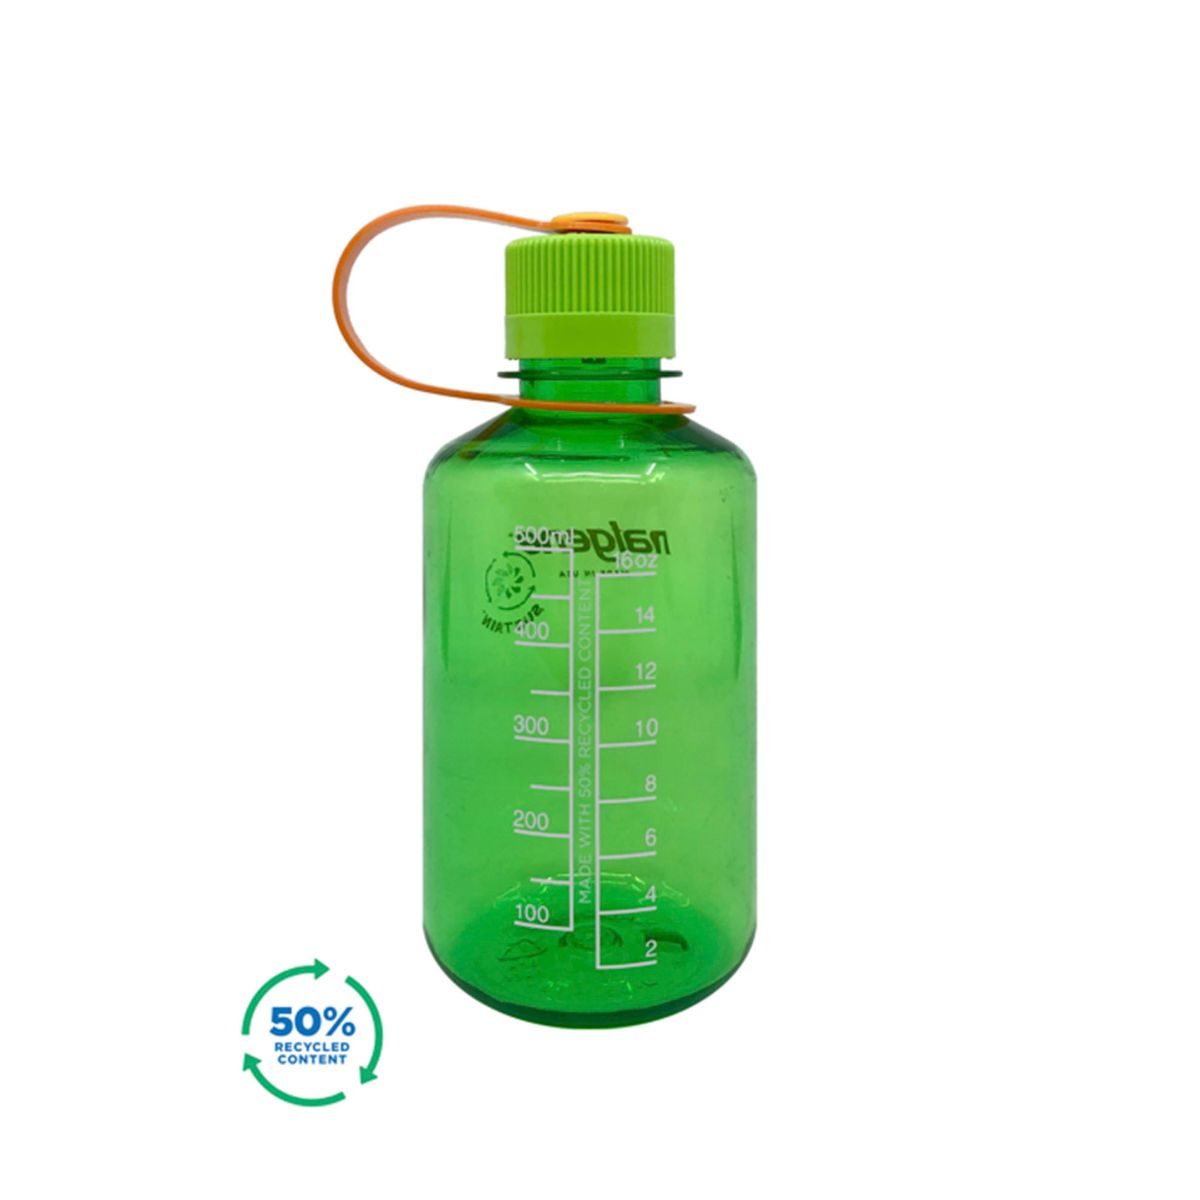 Grønn drikkeflaske i 50% resirkulert materiale. BPA-fr